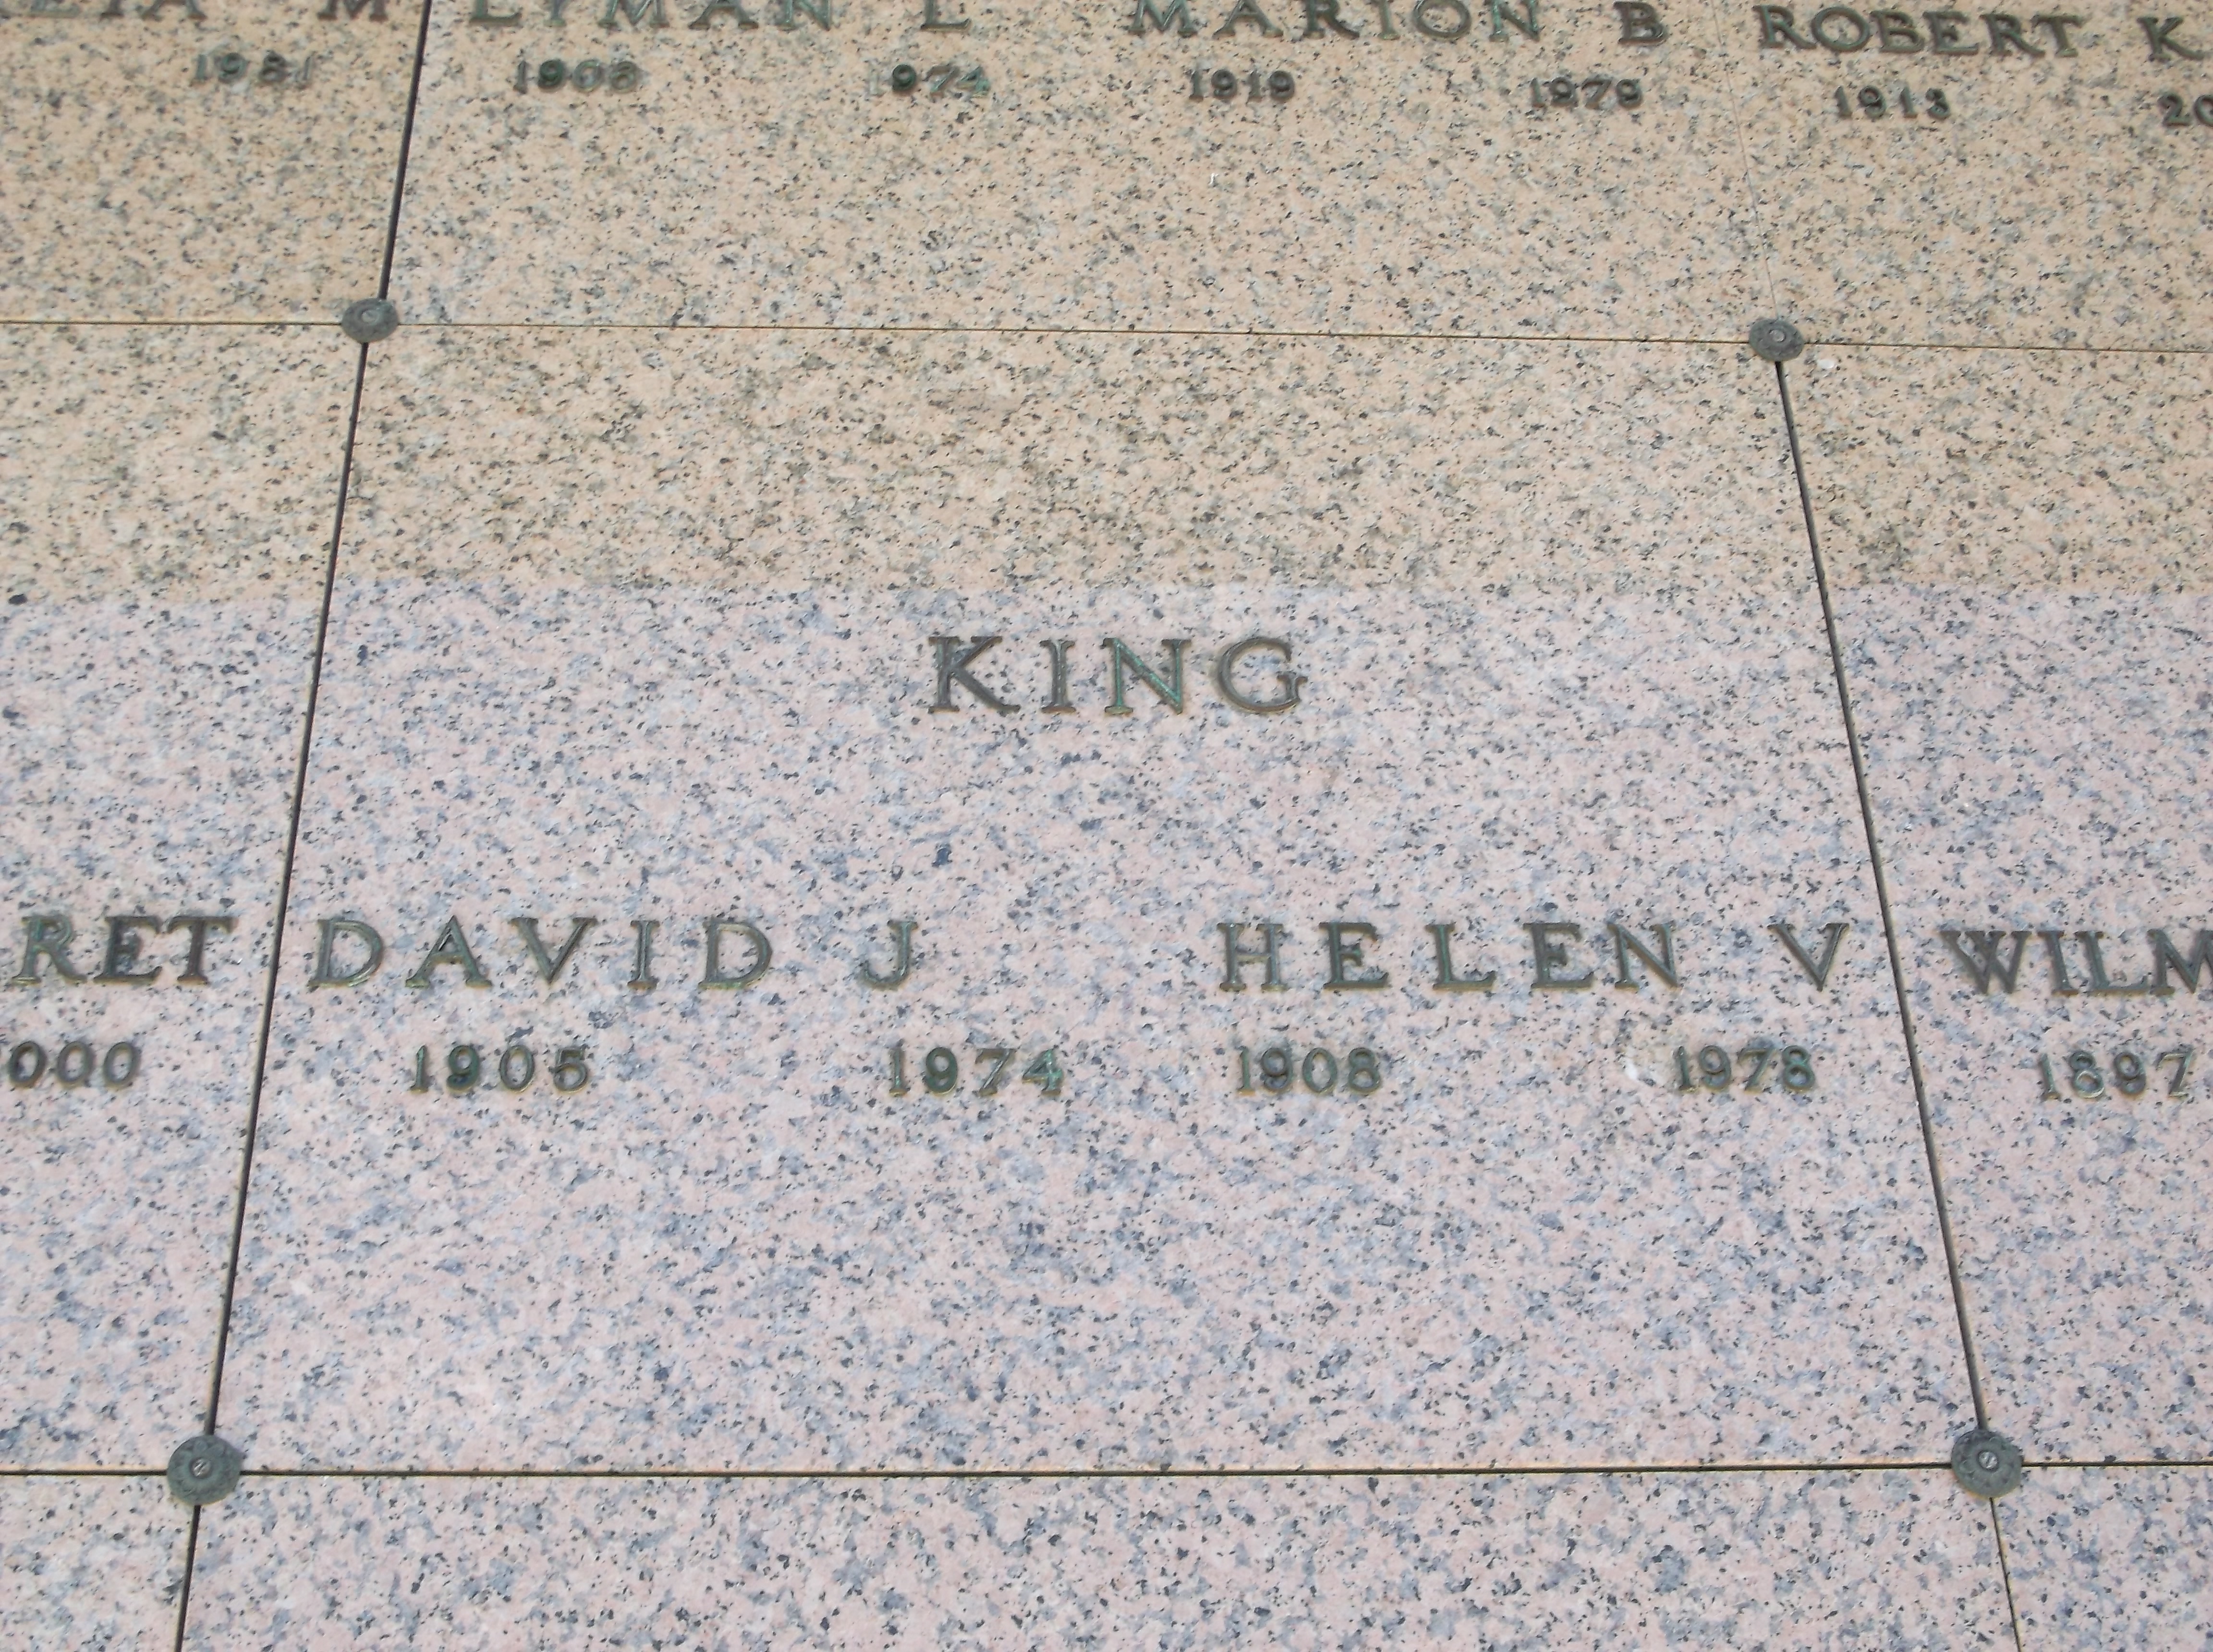 David J King